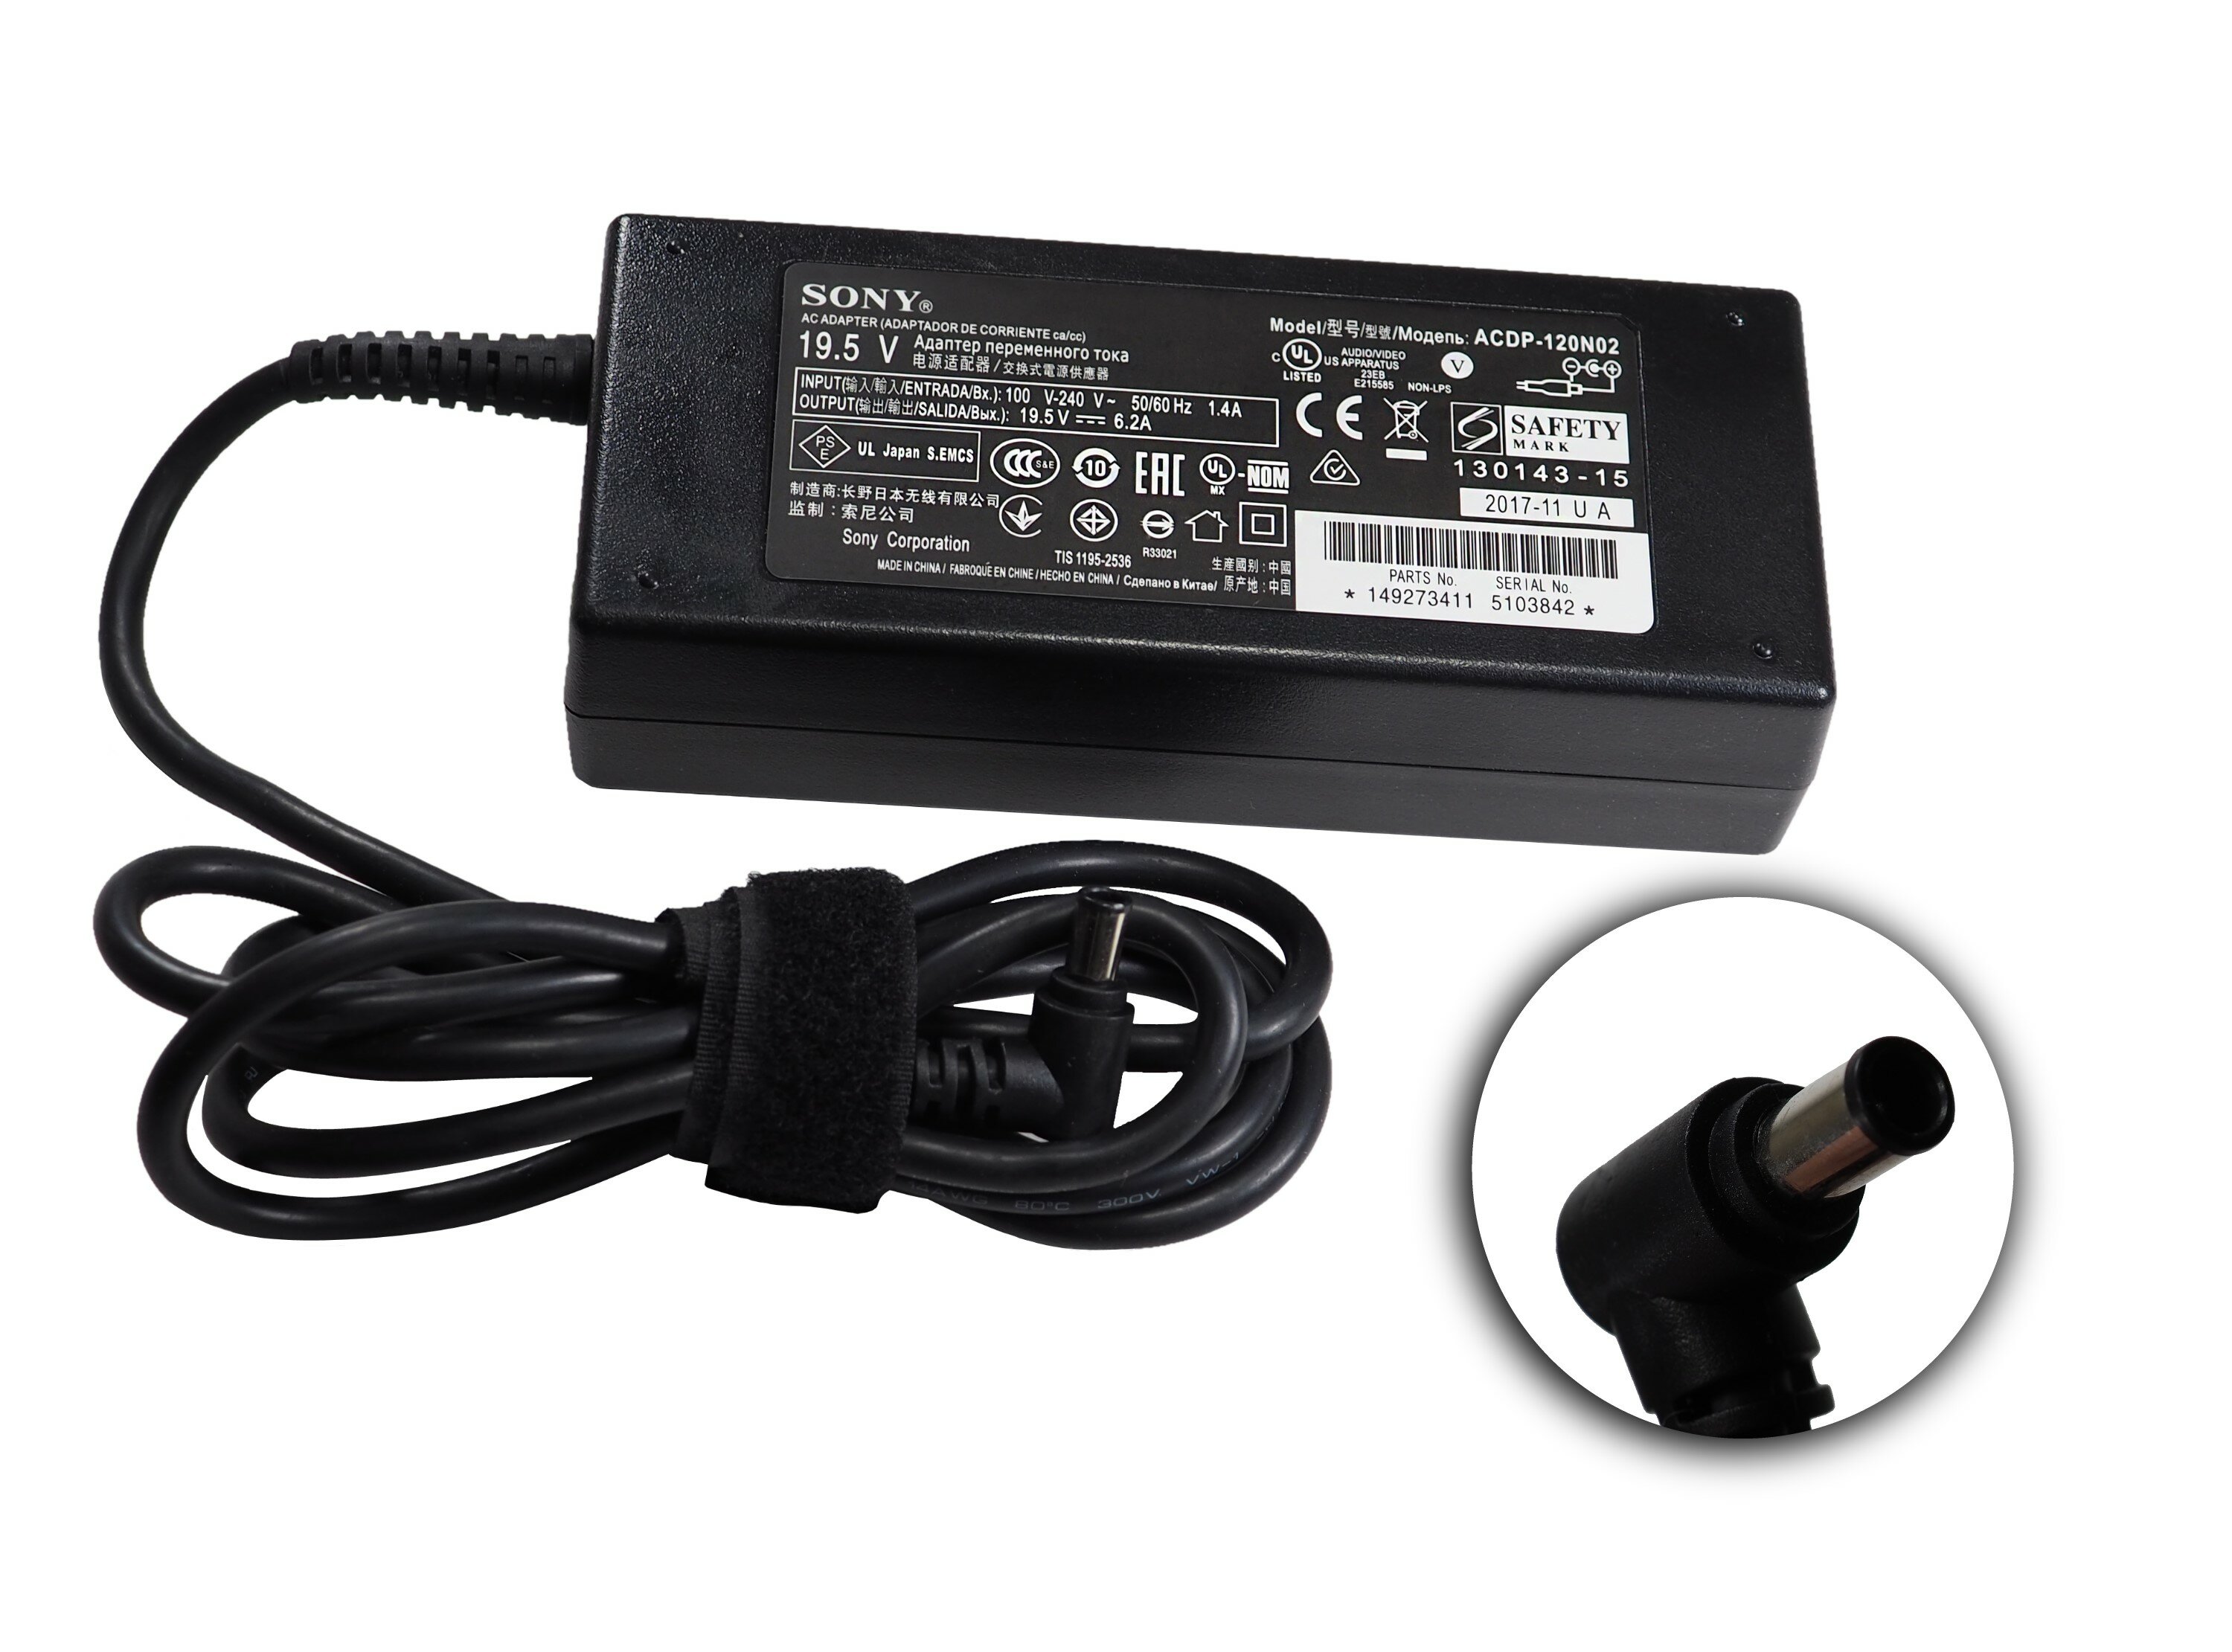 Адаптер переменного тока блок питания для телевизора Sony ACDP-120N03 ACDP-120N02 ACDP-120N01 ACDP-120E03 ACDP-120E02 120E01 120D01 19.5V-6.2A 120W